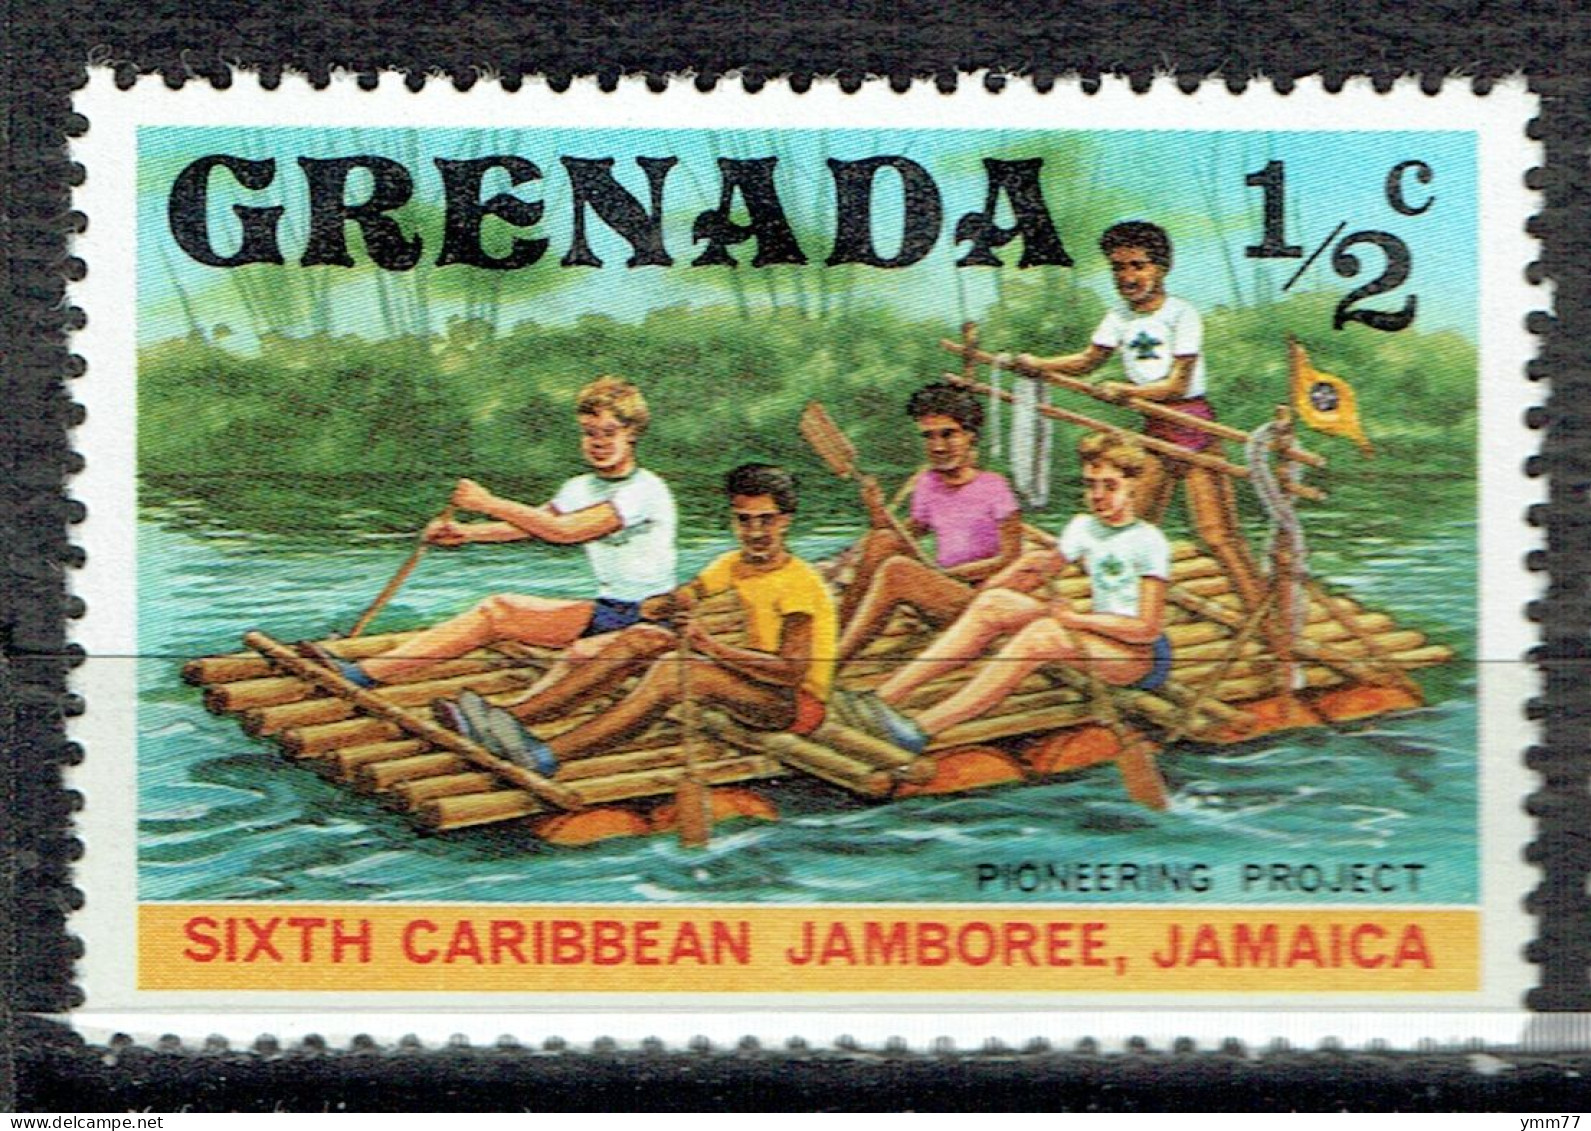 6ème Jamboree Des Caraïbes En Jamaïque : Déplacement Sur Radeau - Grenada (1974-...)